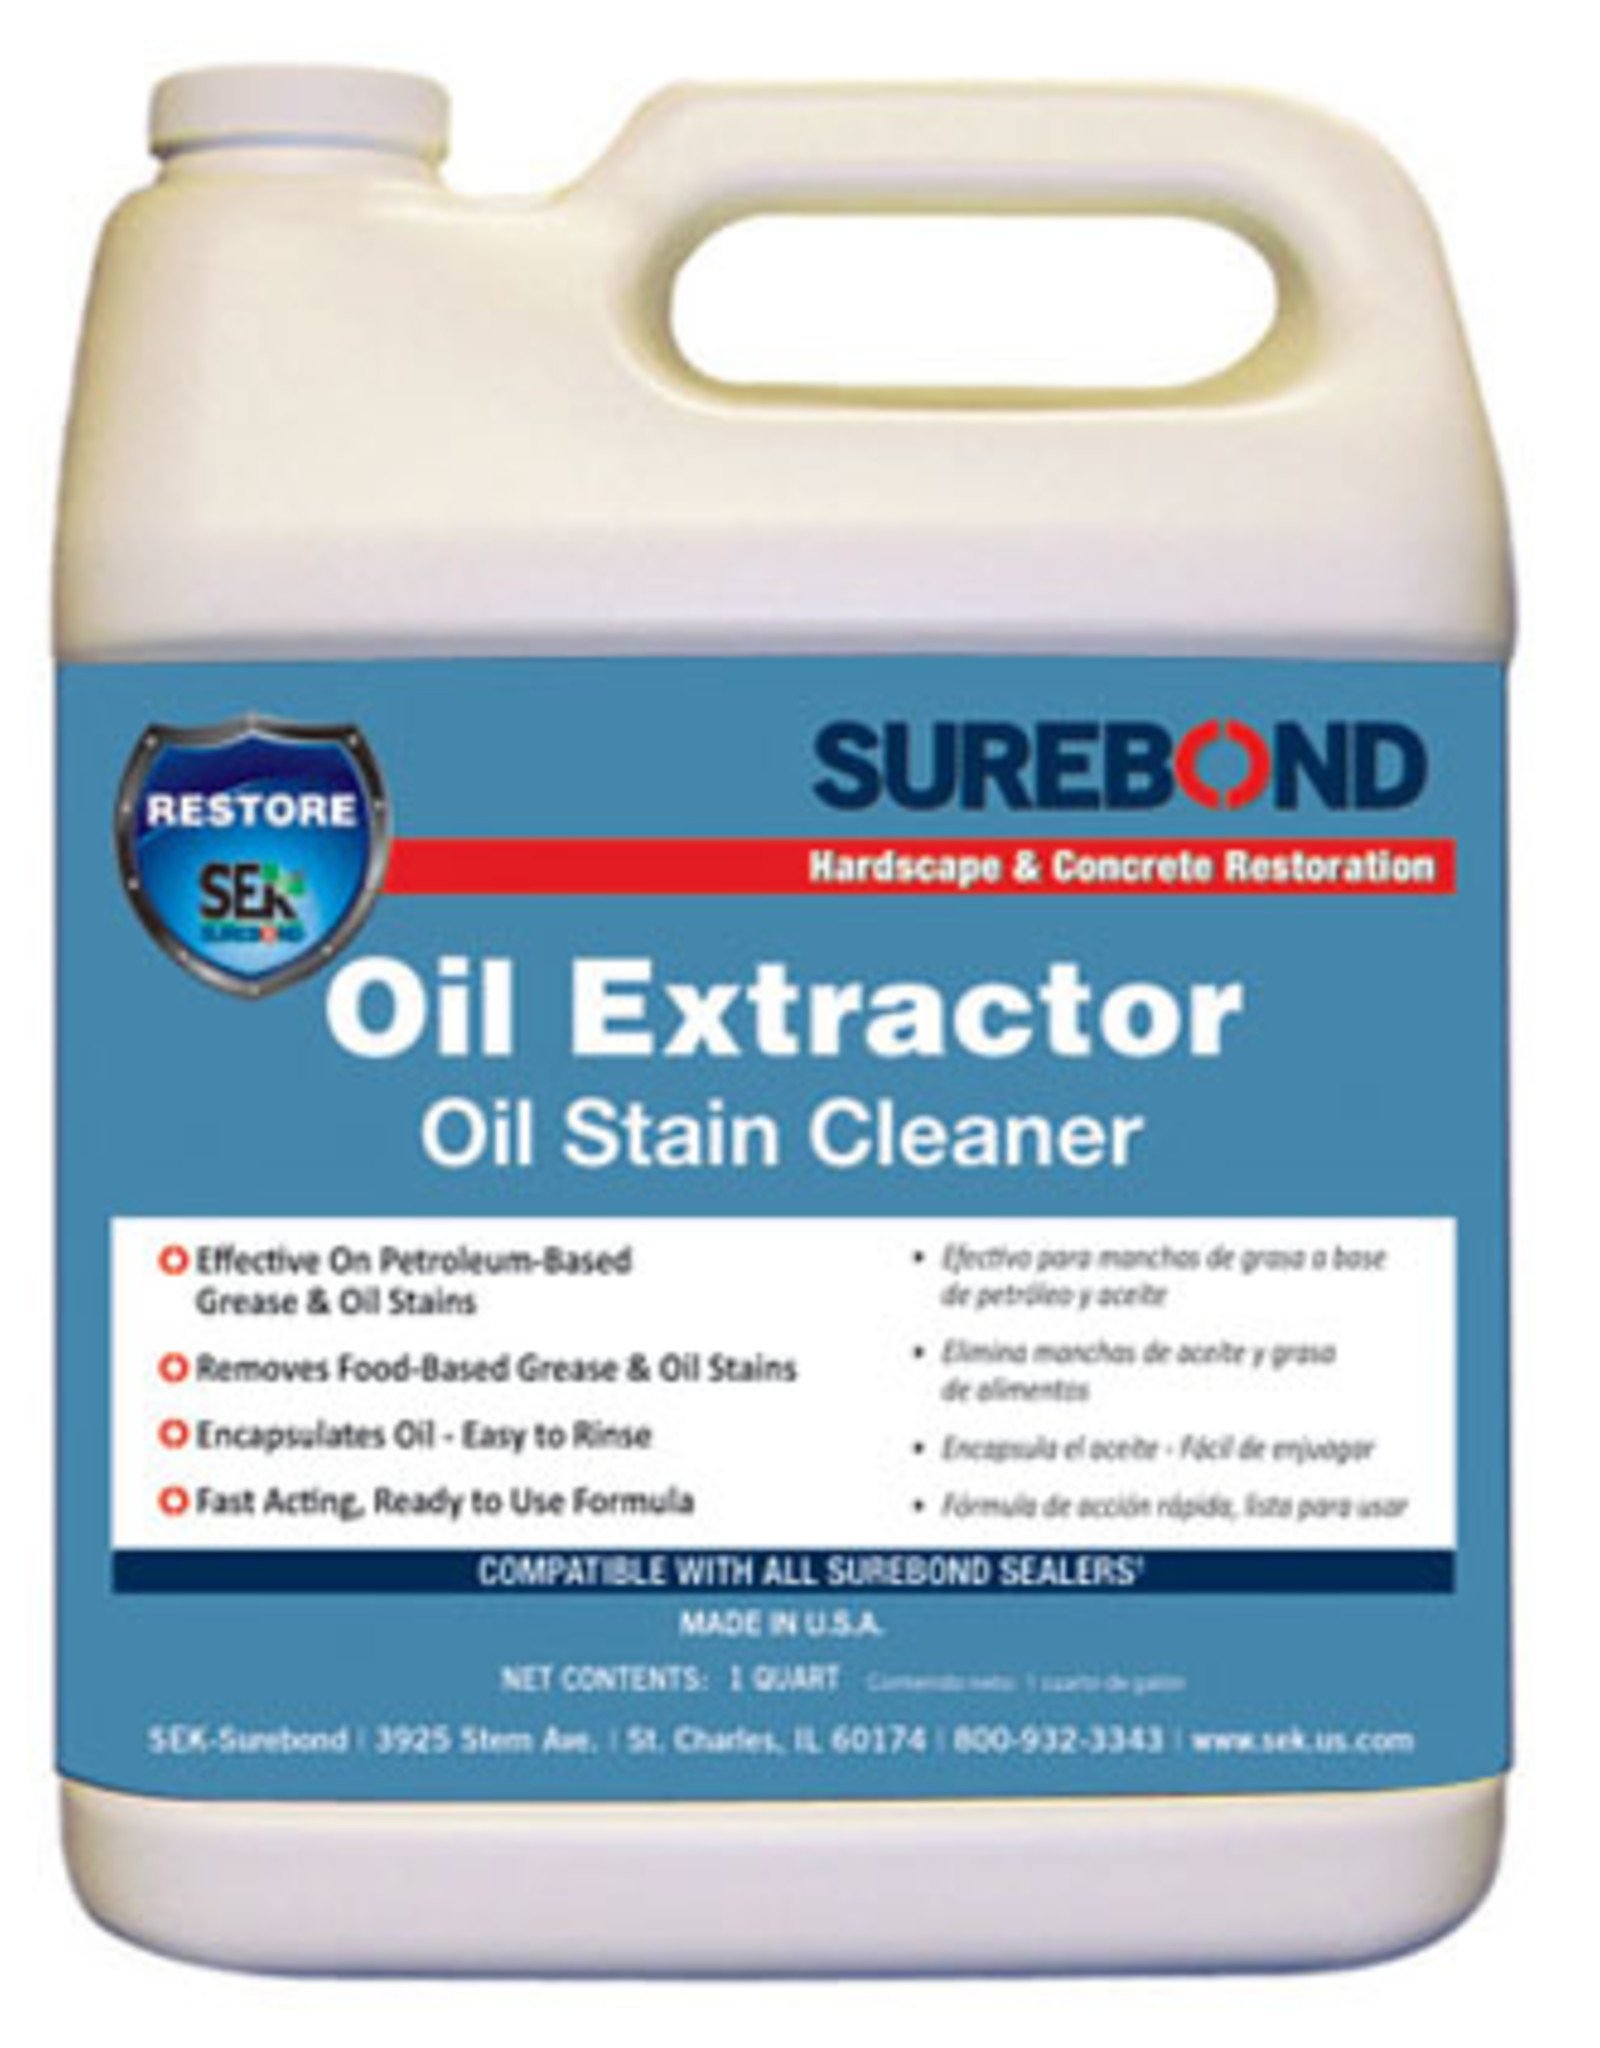 SEK Surebond Oil Extractor Oil Stain Cleaner, Quart